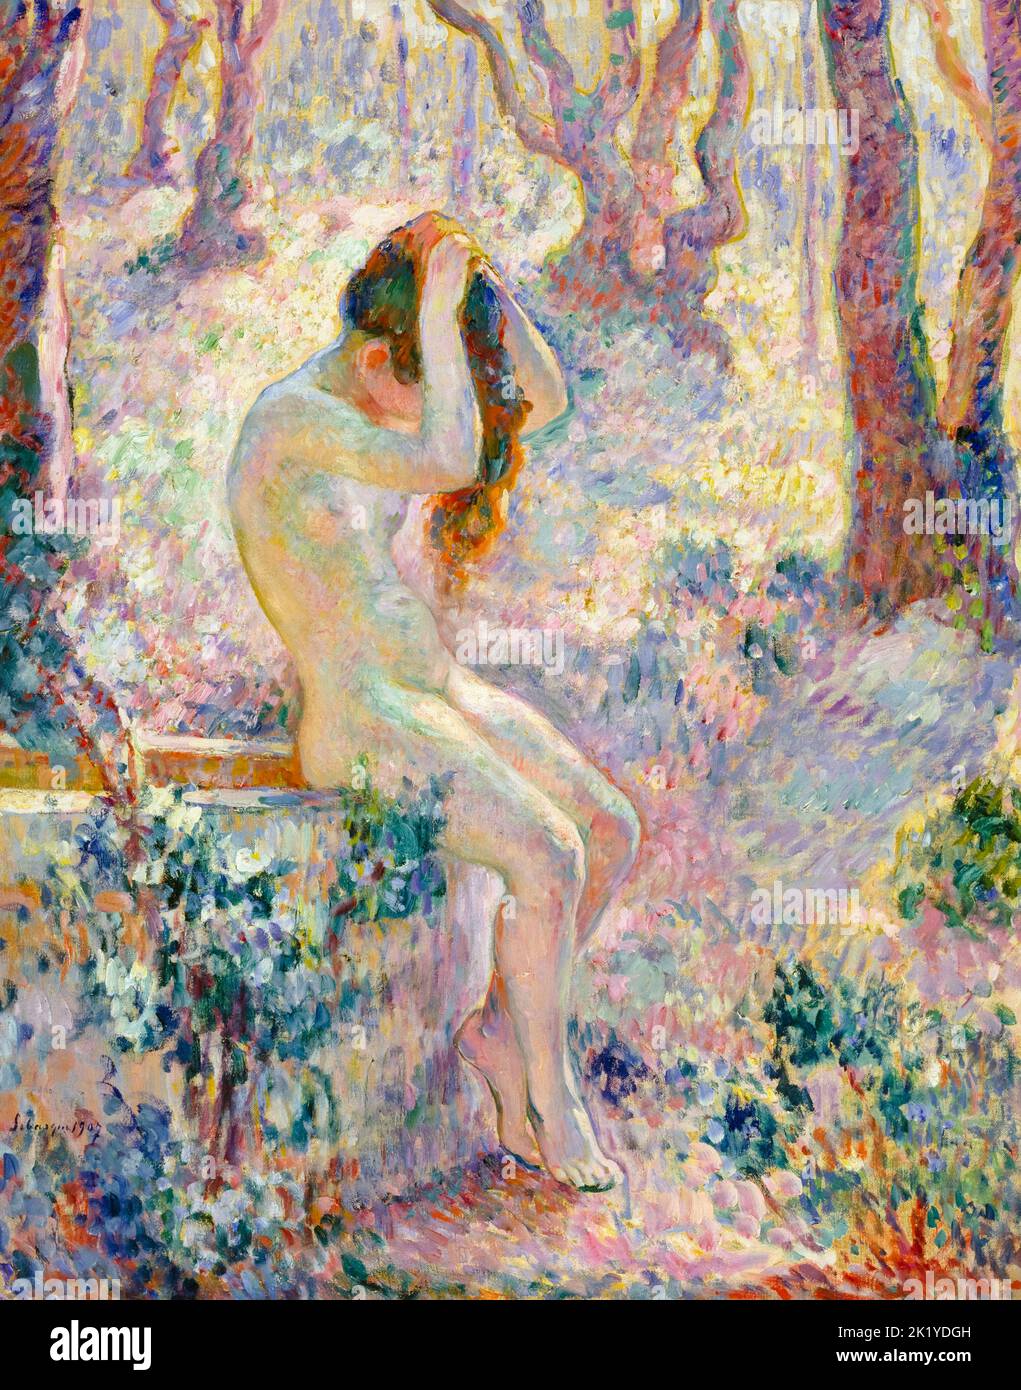 Henri Lebasque, giovane nudo seduto sul bordo di un pozzo, pittura in olio su tela, 1907 Foto Stock